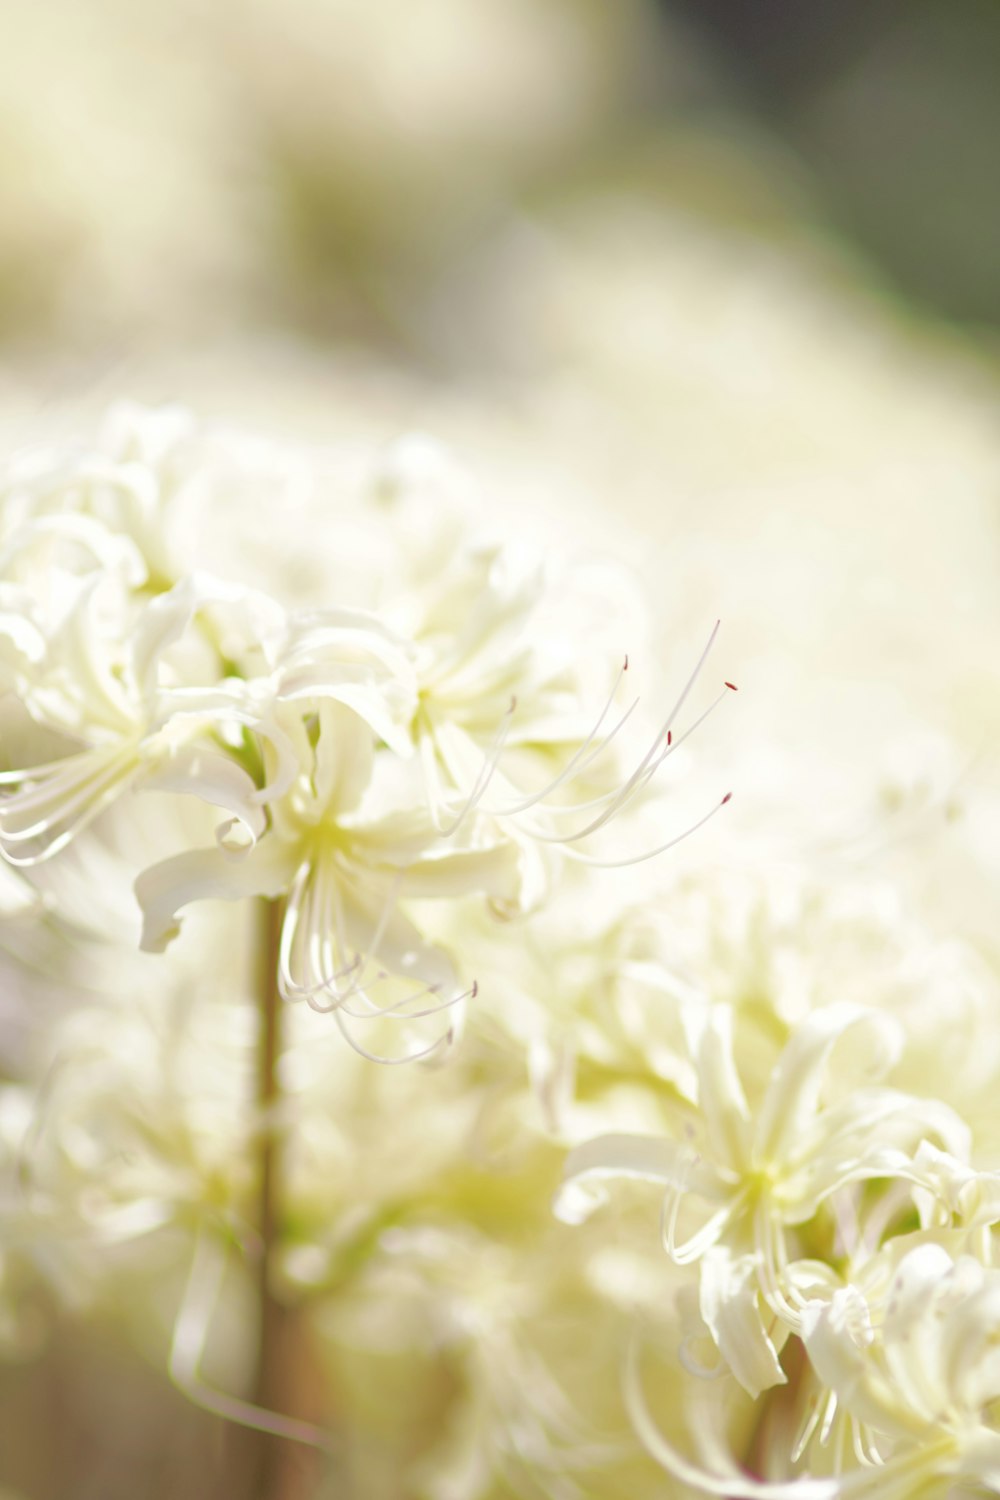 Nahaufnahme eines Straußes weißer Blumen